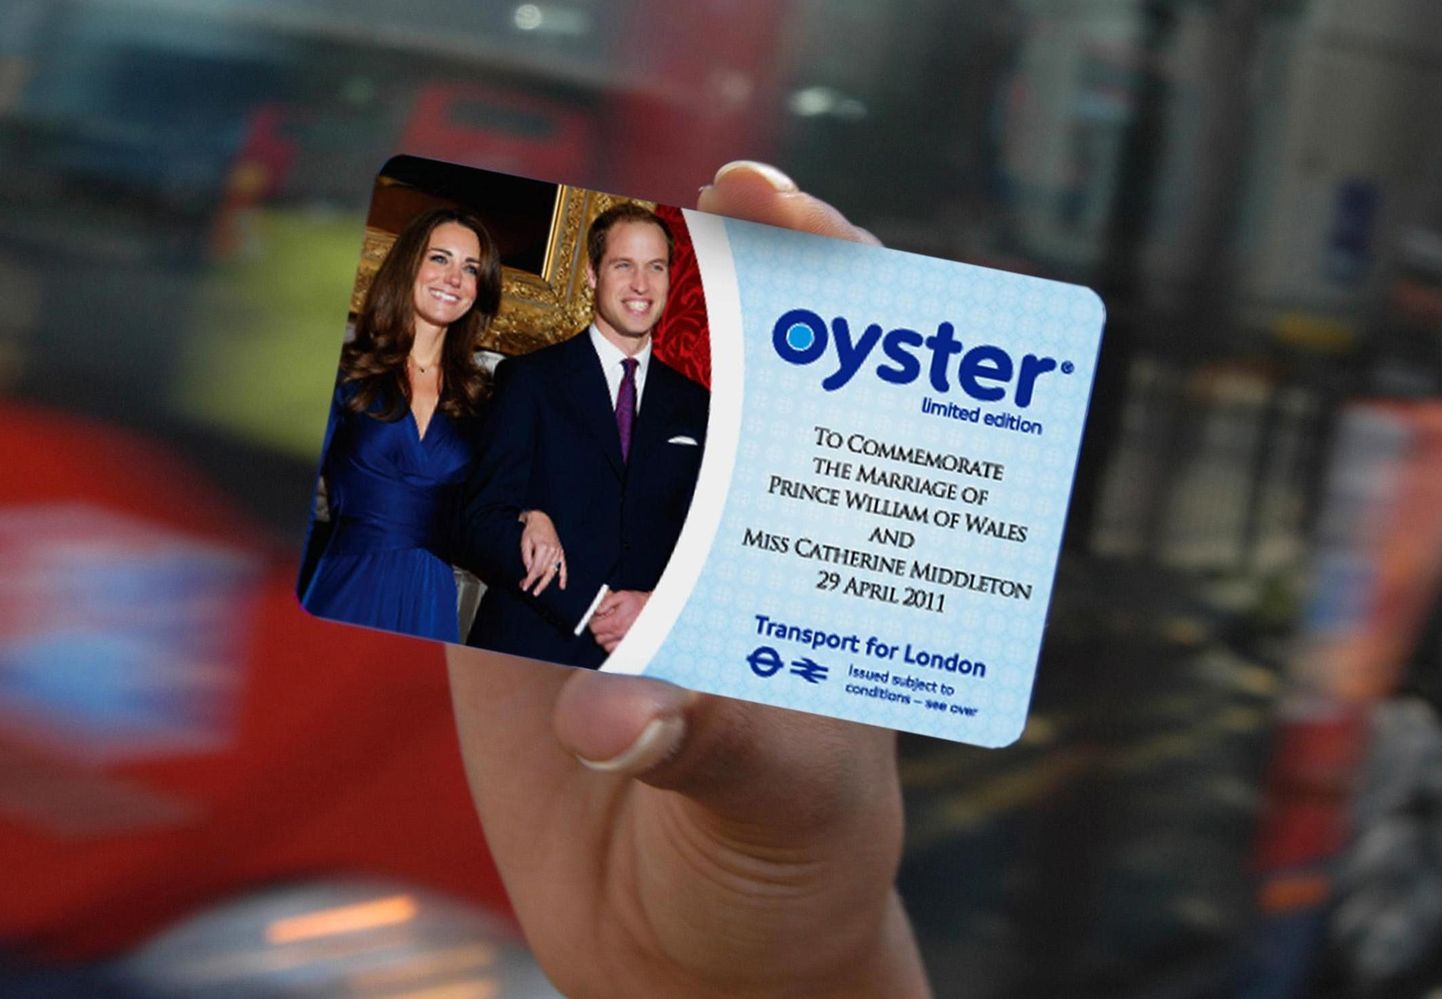 Kuninglike pulmade meenutusena välja antud Londoni ühistranspordi kaardid - Oyster cards